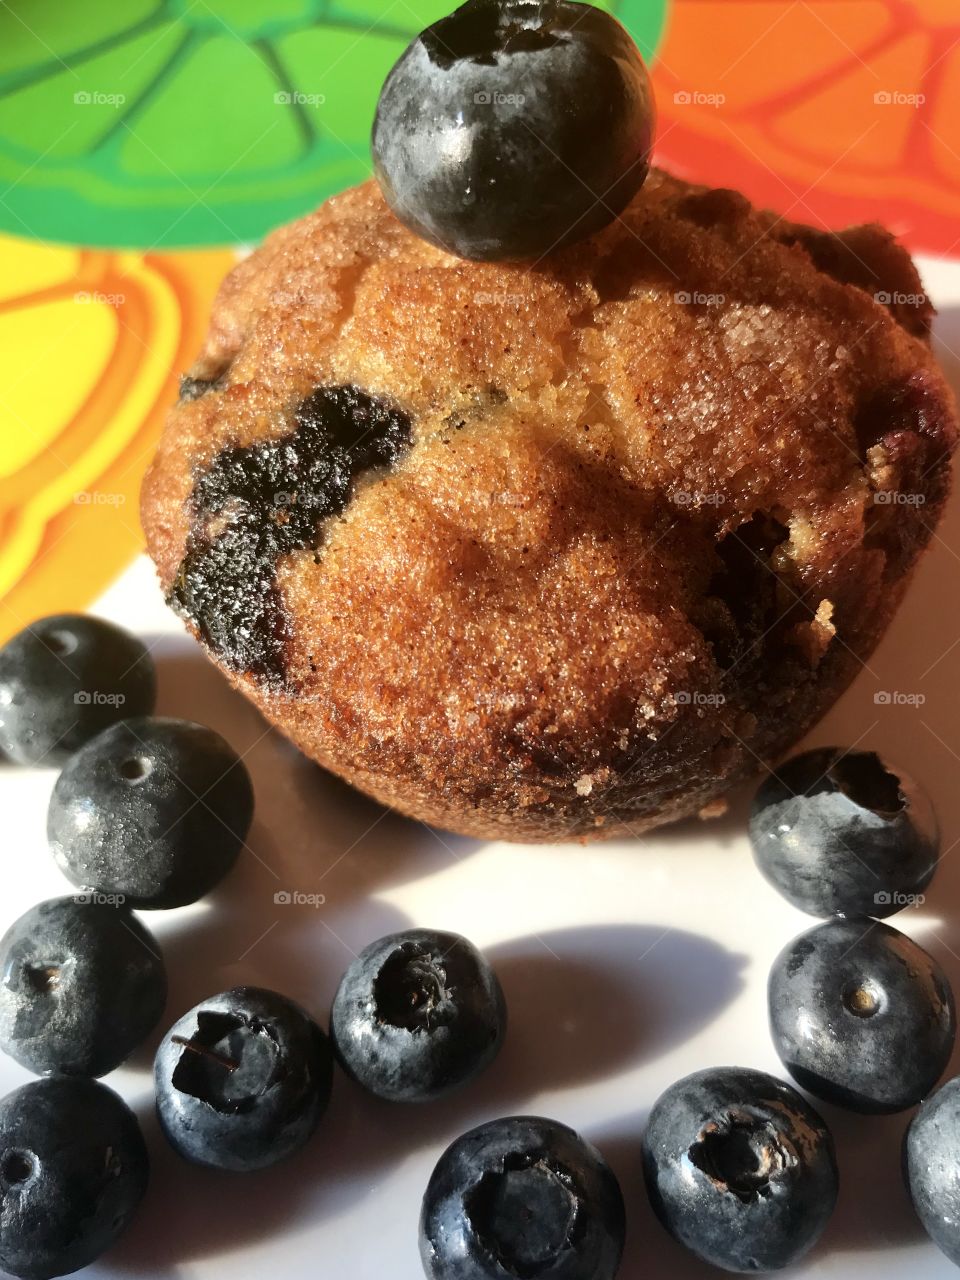 Breakfast blueberry muffins!